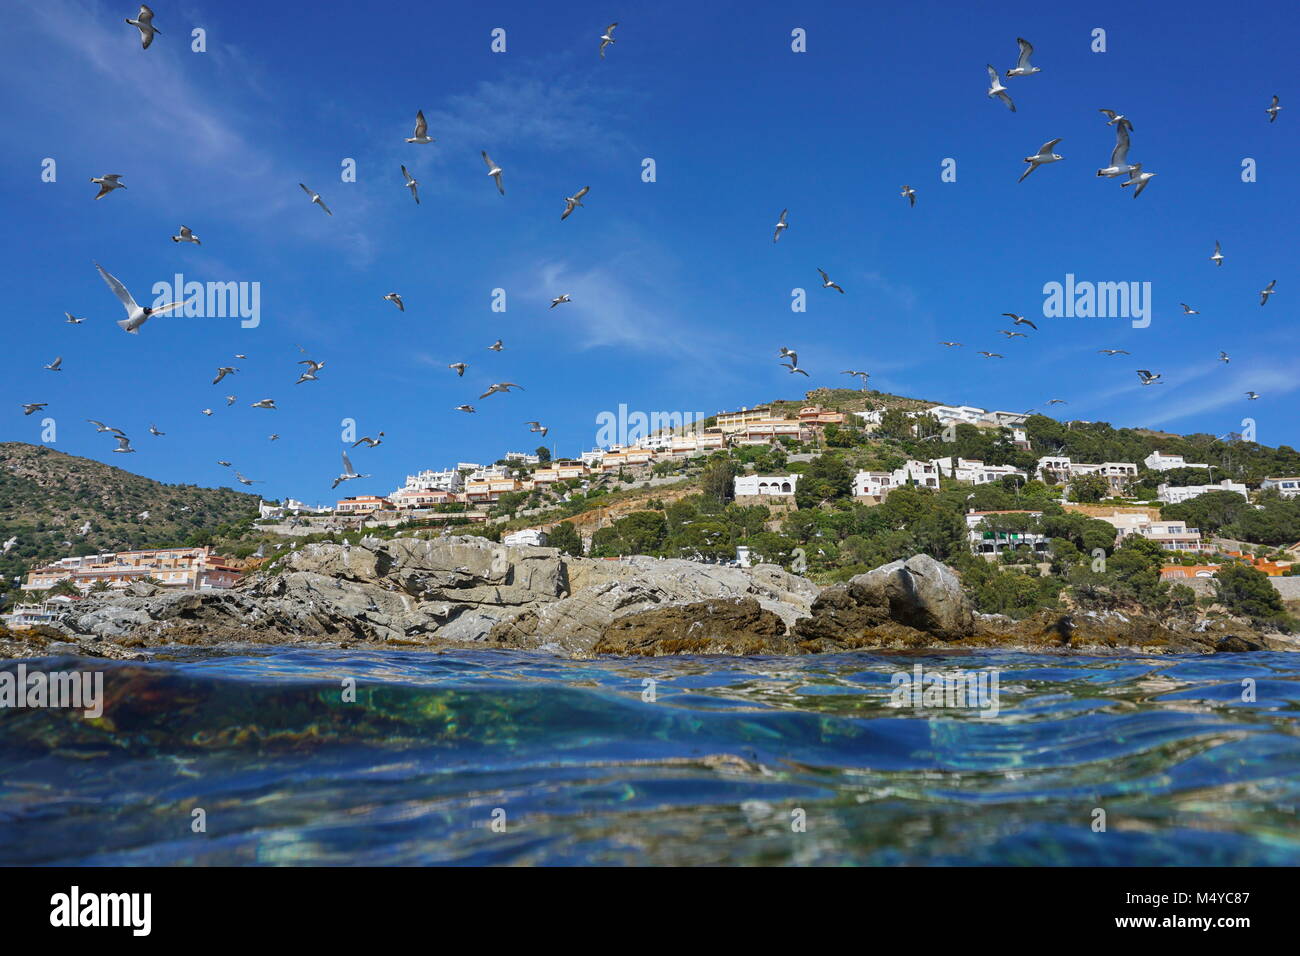 Mediterráneo gaviotas volando sobre una playa rocosa con edificios en el fondo, visto desde la superficie de agua, España, Costa Brava, Cataluña, Roses, Girona Foto de stock